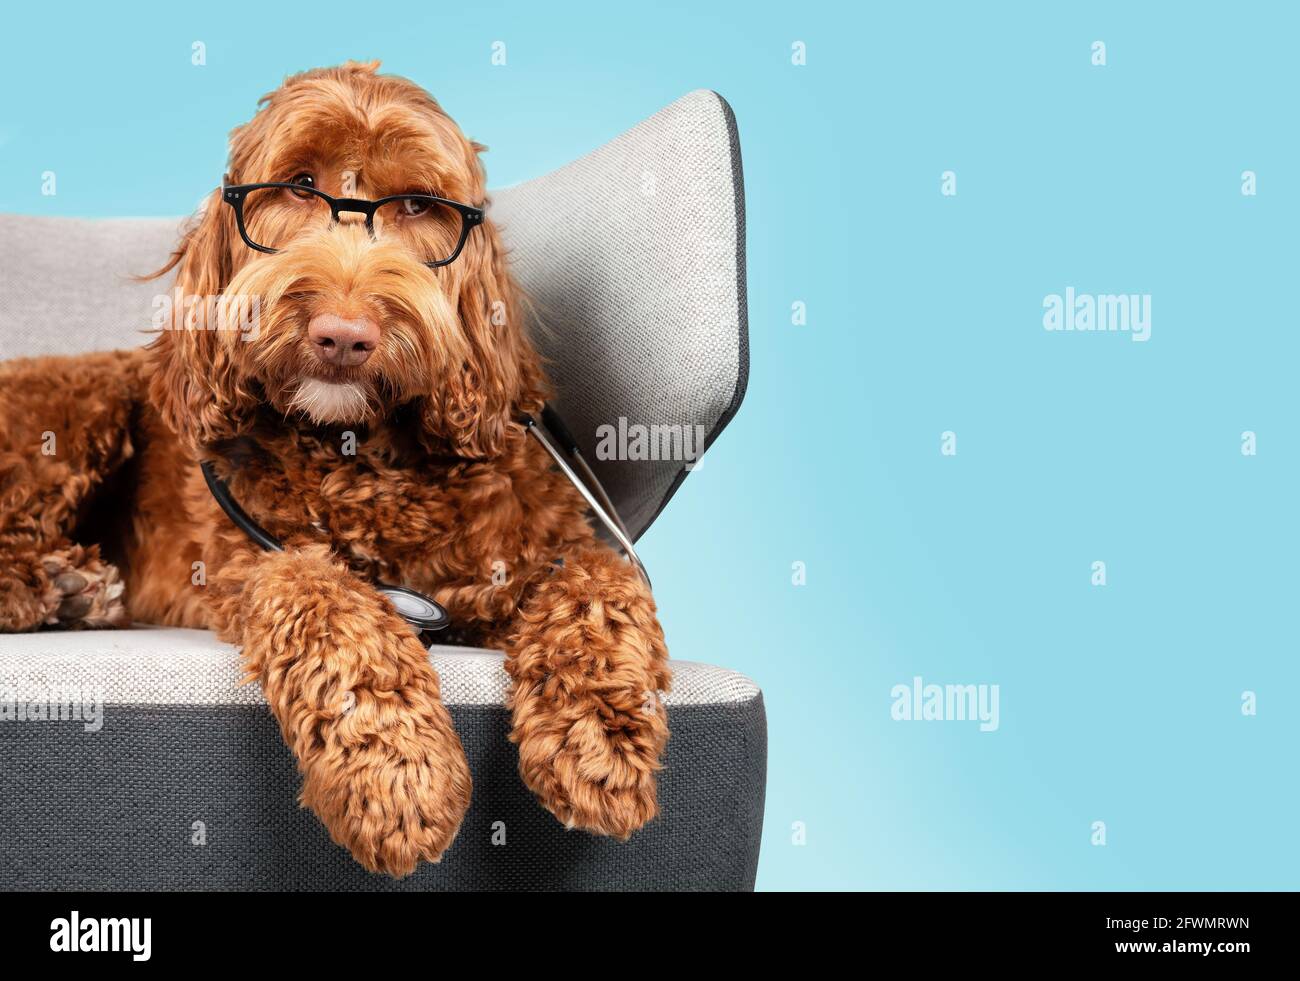 Labradoodle Hund mit Brille und Stethoskop auf Sofa-Stuhl mit blauem Hintergrund. Niedlicher flauschiger Hund mit geneigtem Kopf und lauschigem Ausdruck. Haustier Stockfoto